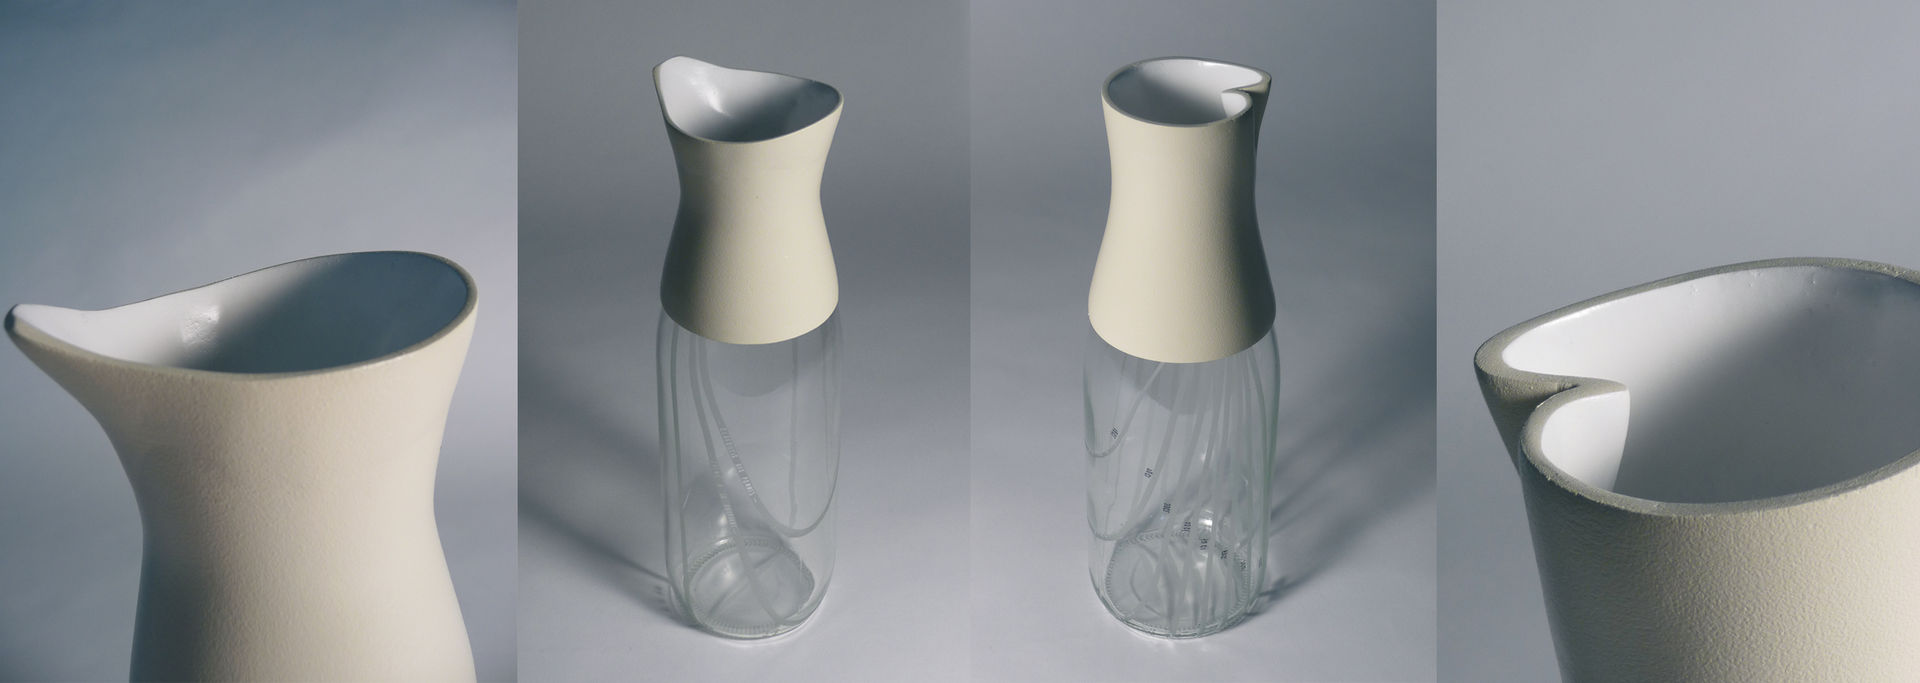 [Re]lait - Le design au service du lait cru, L'Accent du m L'Accent du m Cocinas de estilo minimalista Vasos, cubiertos y vajilla